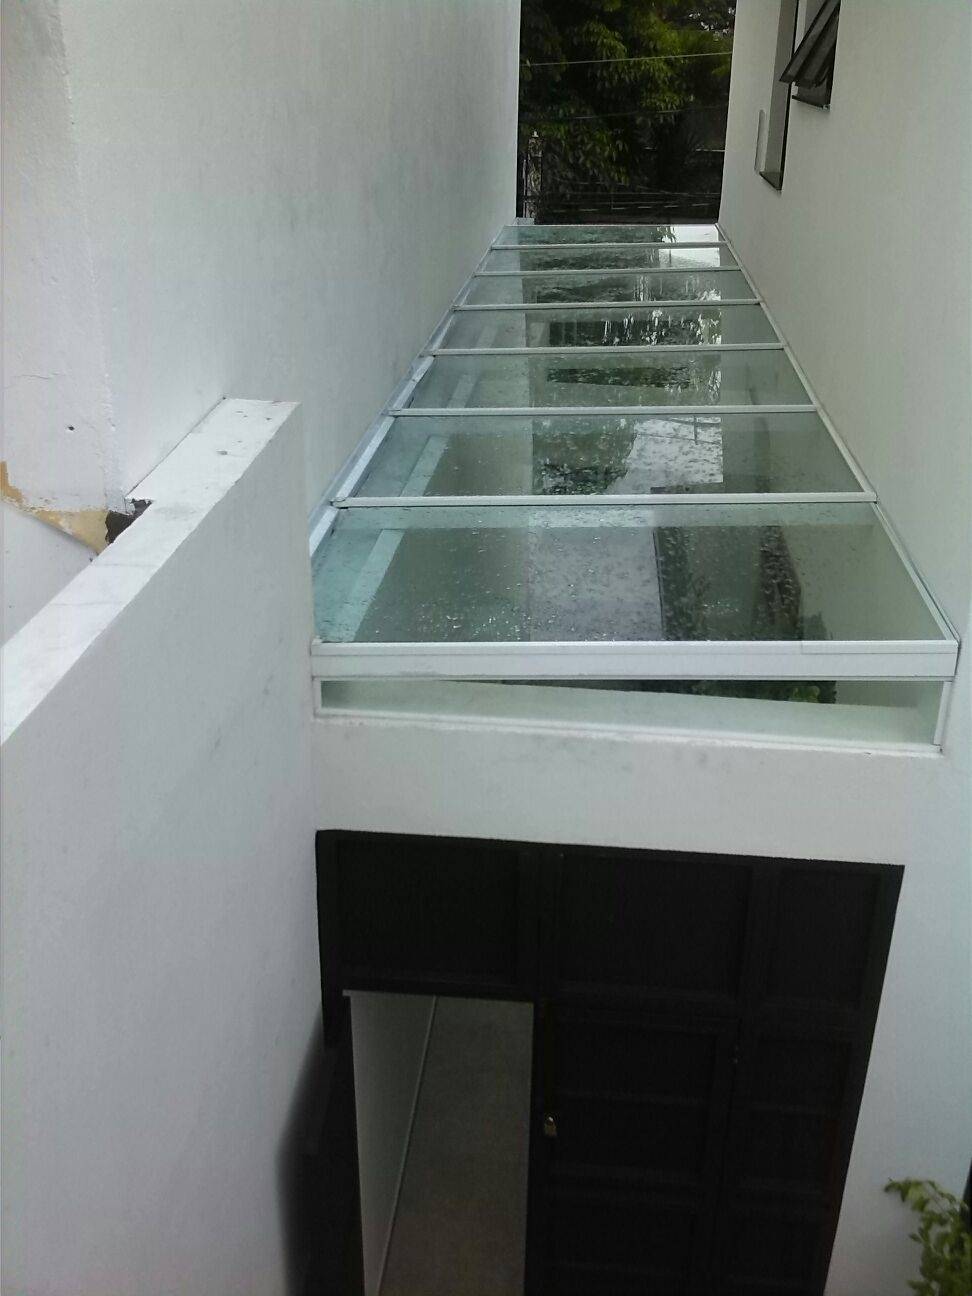 Cobertura de Vidro para Corredor Preço em São Bernardo do Campo - Cobertura de Vidro para Pergolado